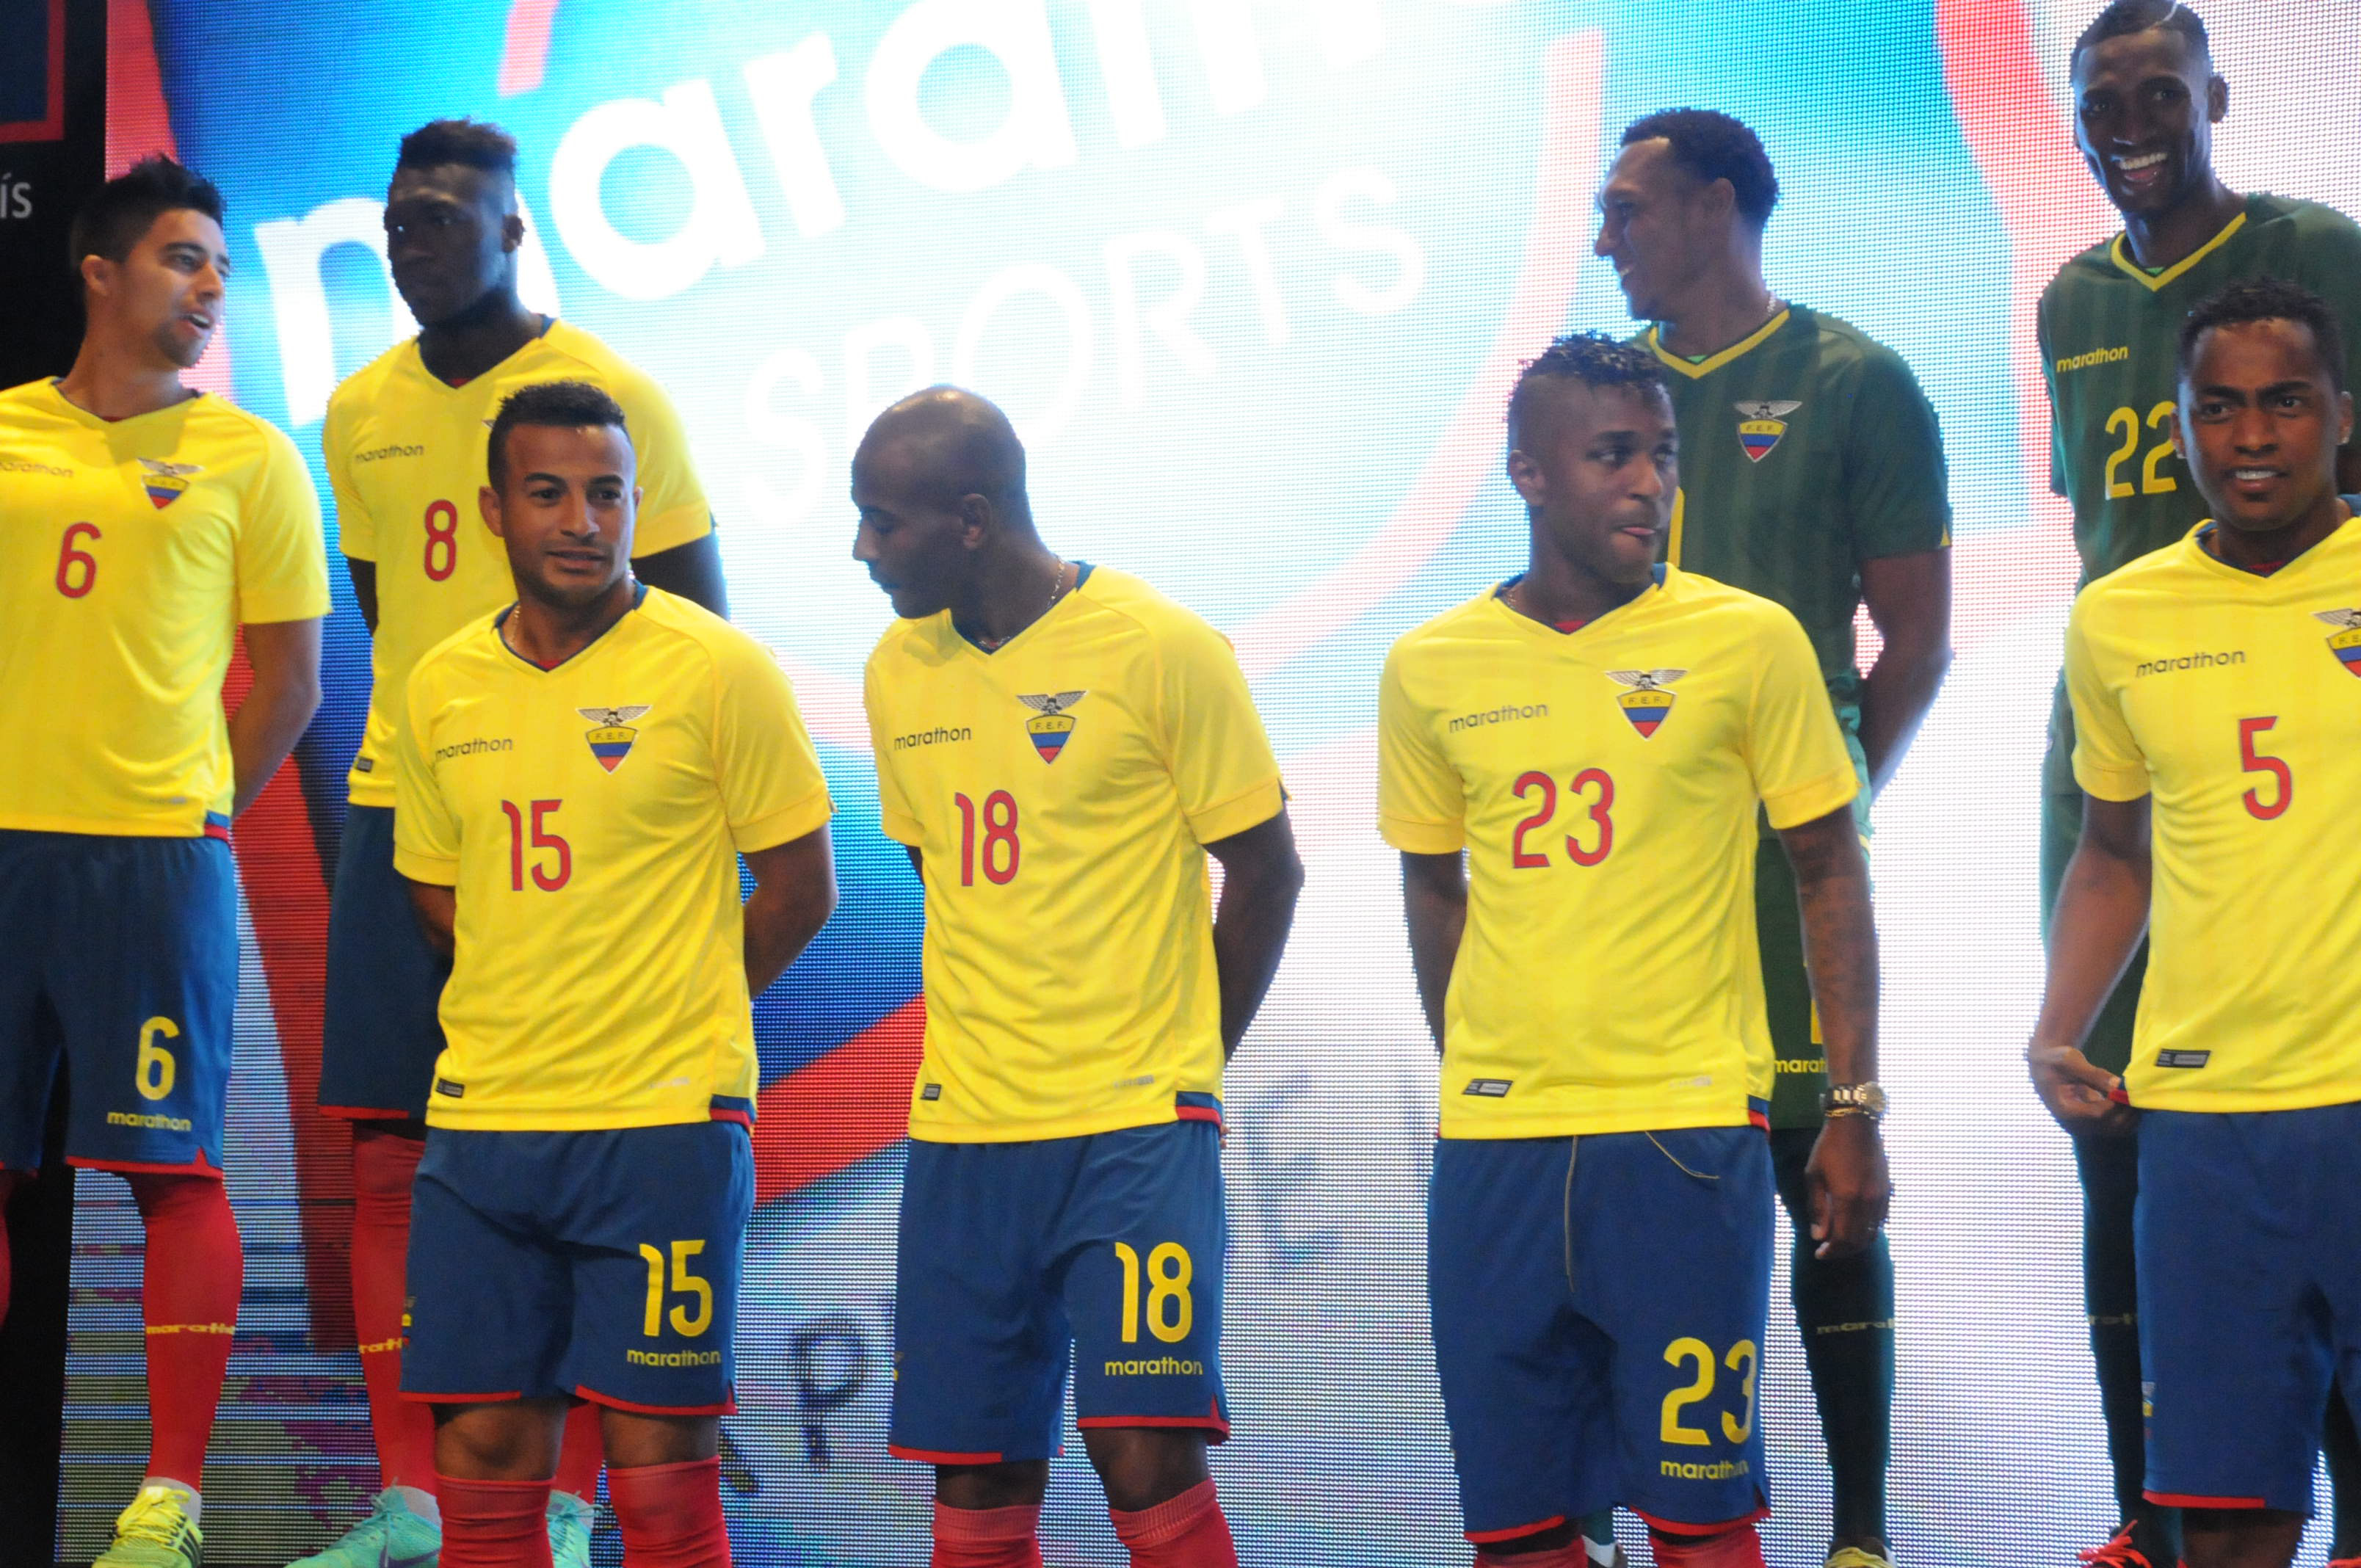 Selección Ecuador tiene nueva camiseta para las eliminatorias al Mundial 2018 | Fútbol | El Universo